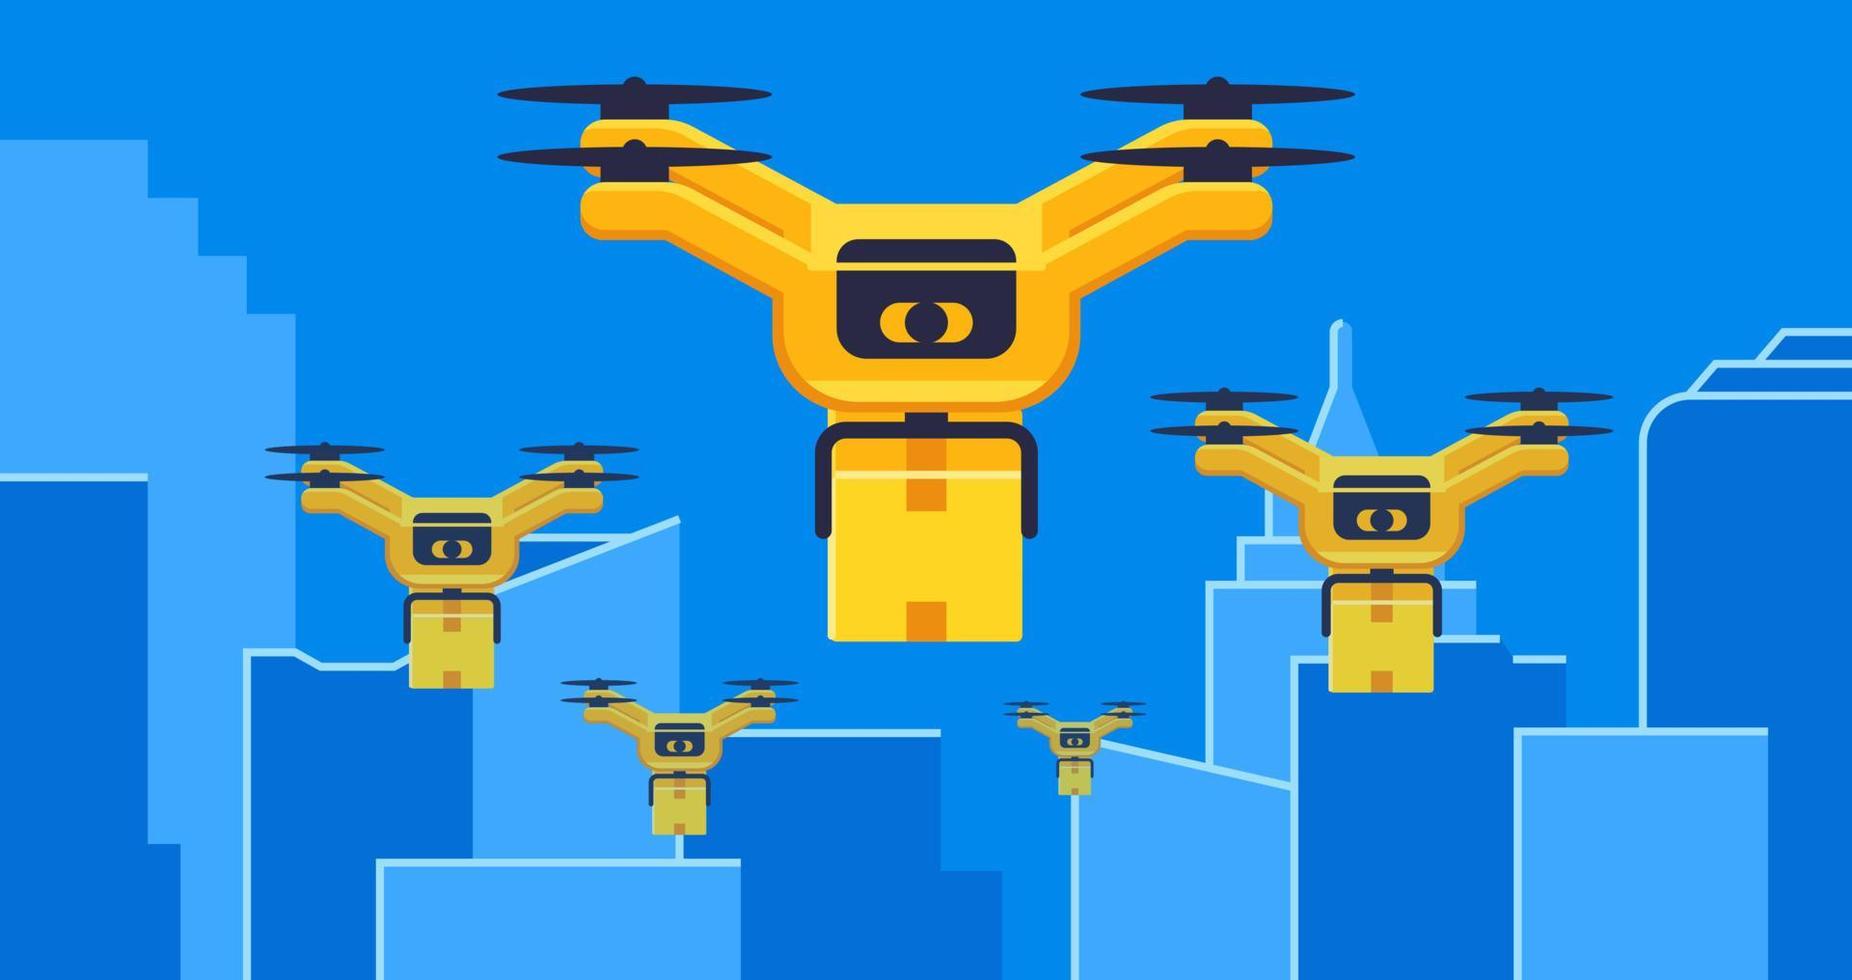 aria droni consegna con pacco volante nel città, fra grattacieli concetto vettore illustrazione